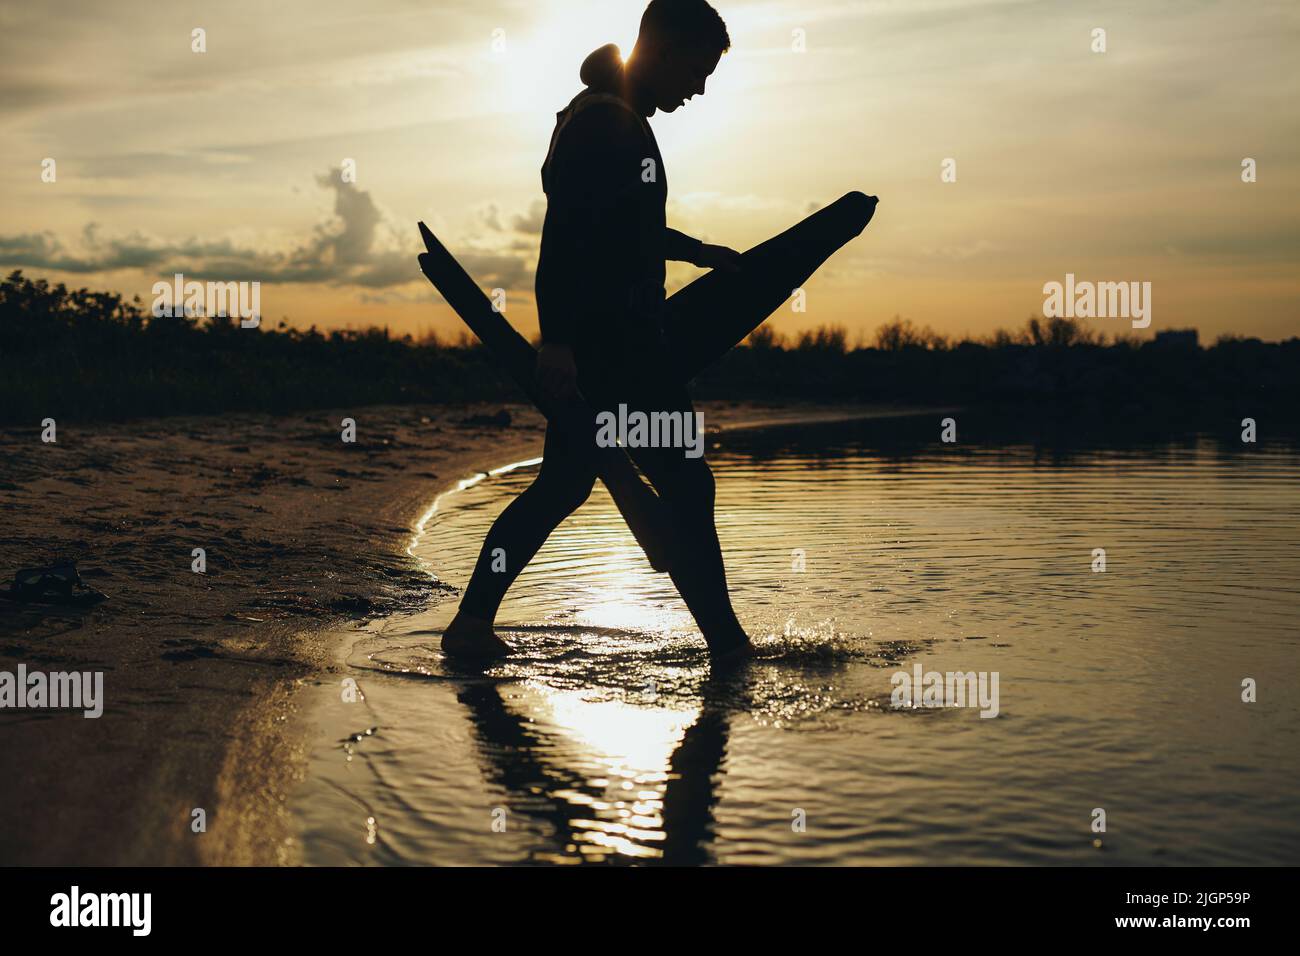 Silhouette Aufnahme eines männlichen Tauchers, der bei Sonnenuntergang Speerfischen geht. Abenteuerlicher junger Mann, der mit seiner Speerfischerei ins Meerwasser geht. Stockfoto